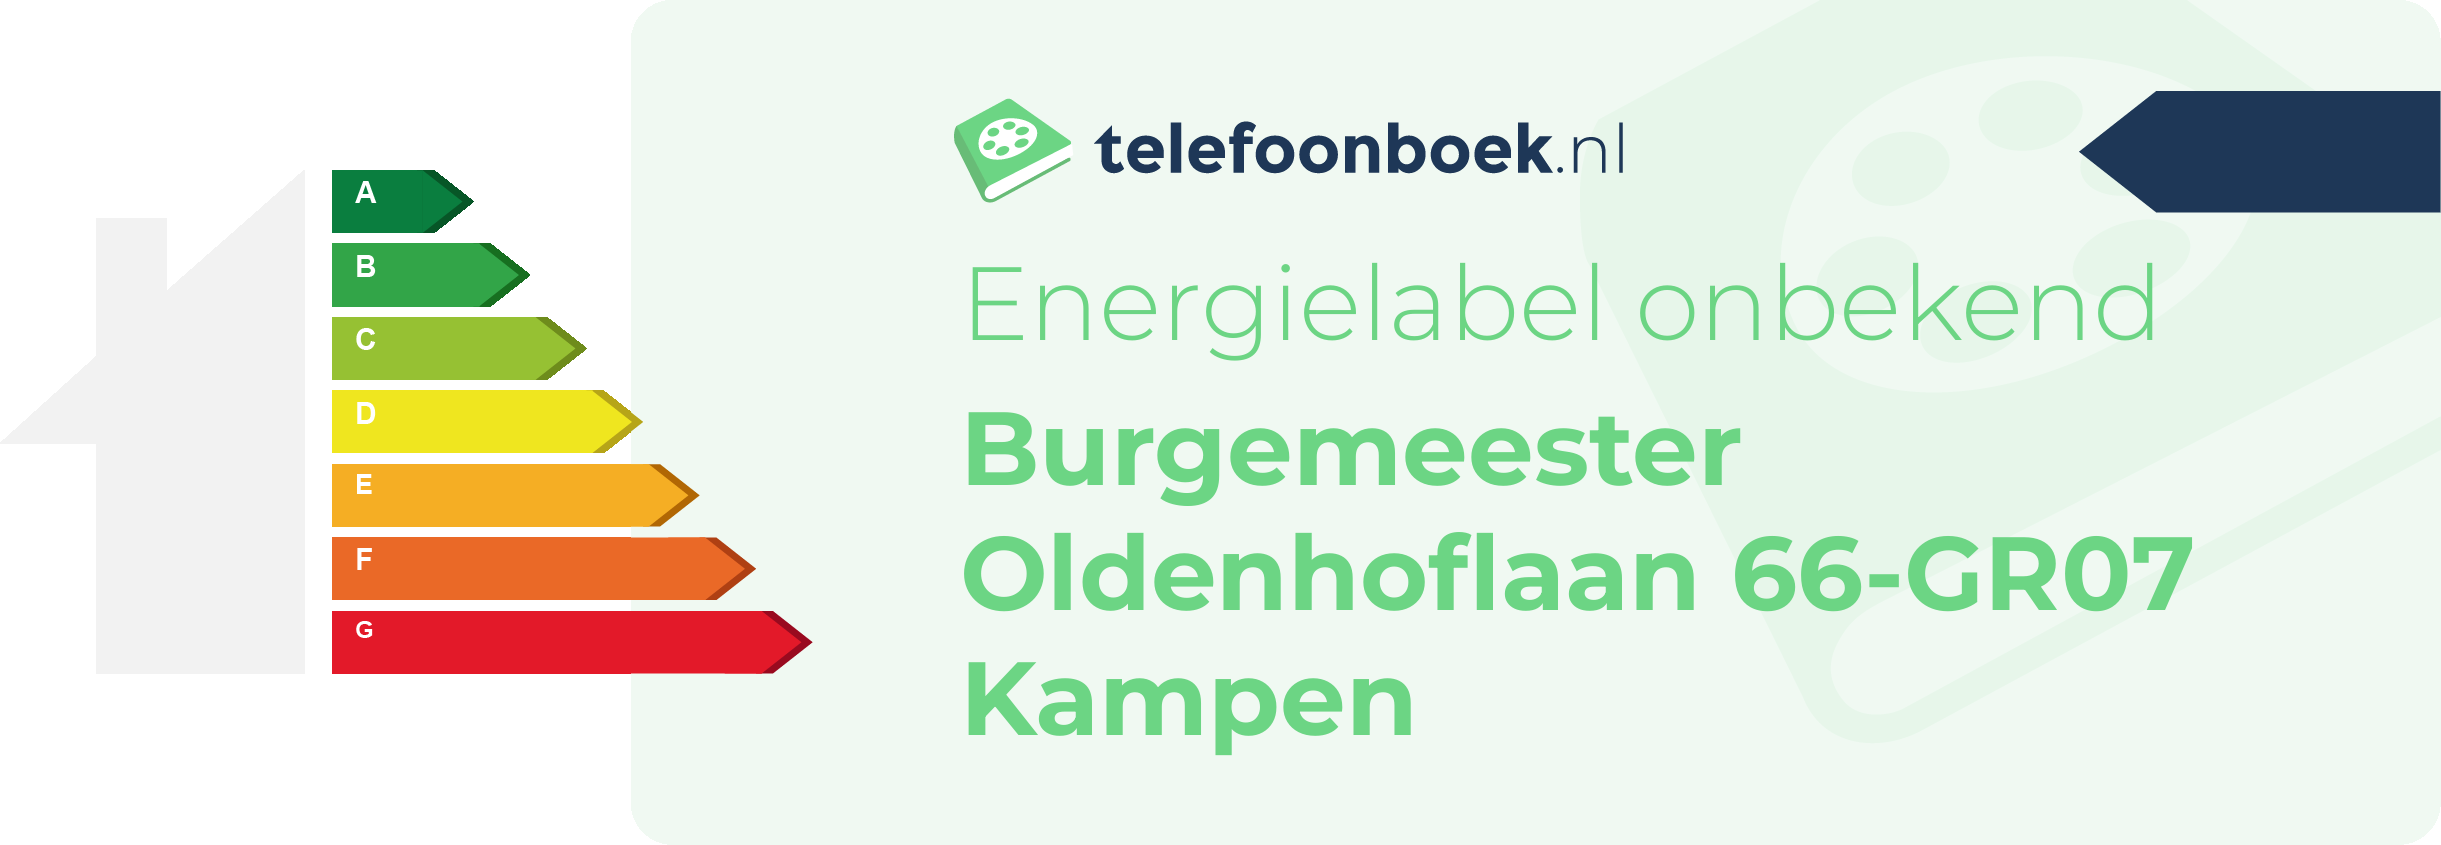 Energielabel Burgemeester Oldenhoflaan 66-GR07 Kampen